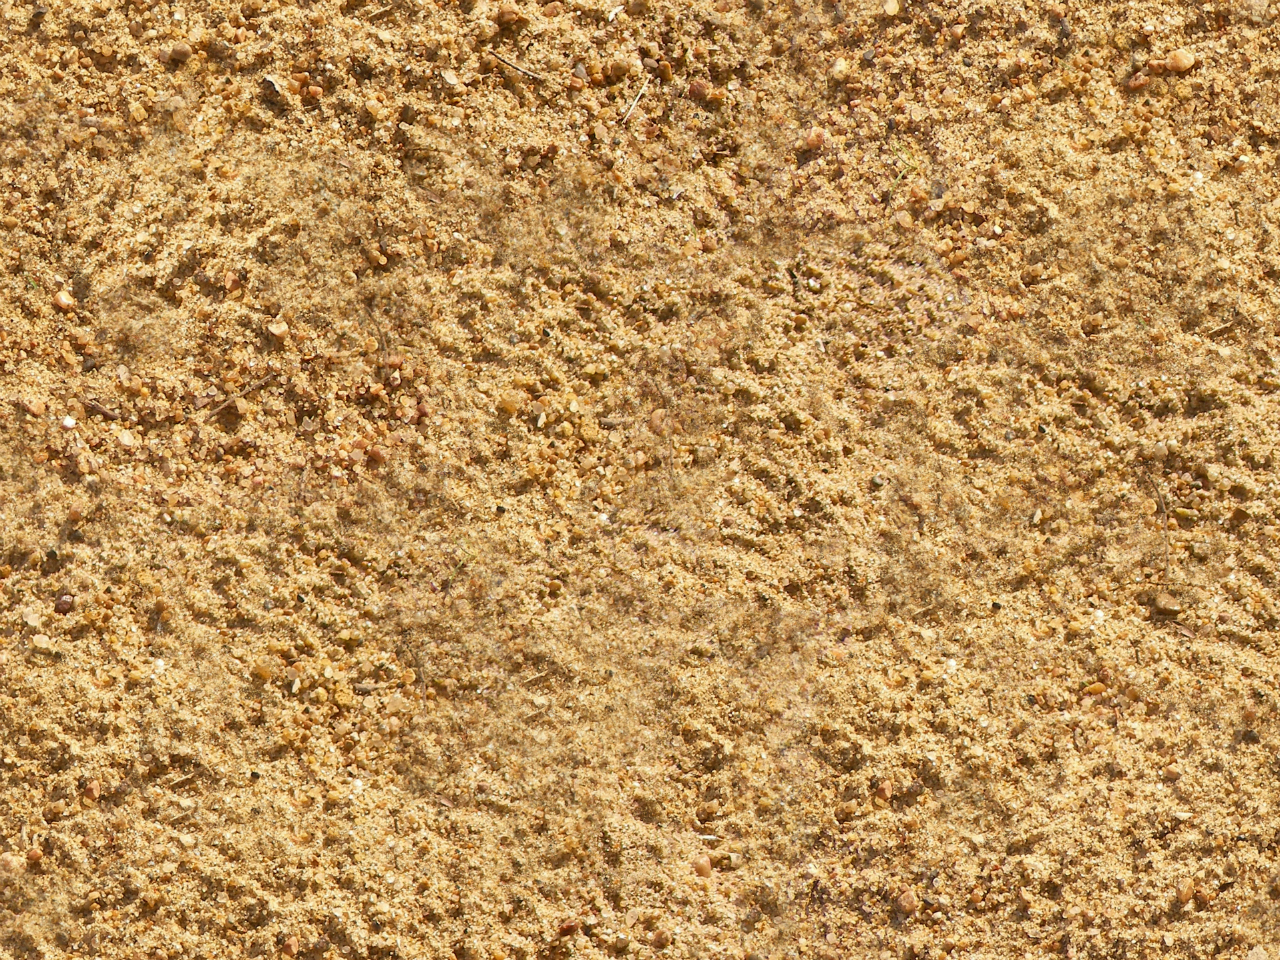 Текстура песка бесшовная для 3d max